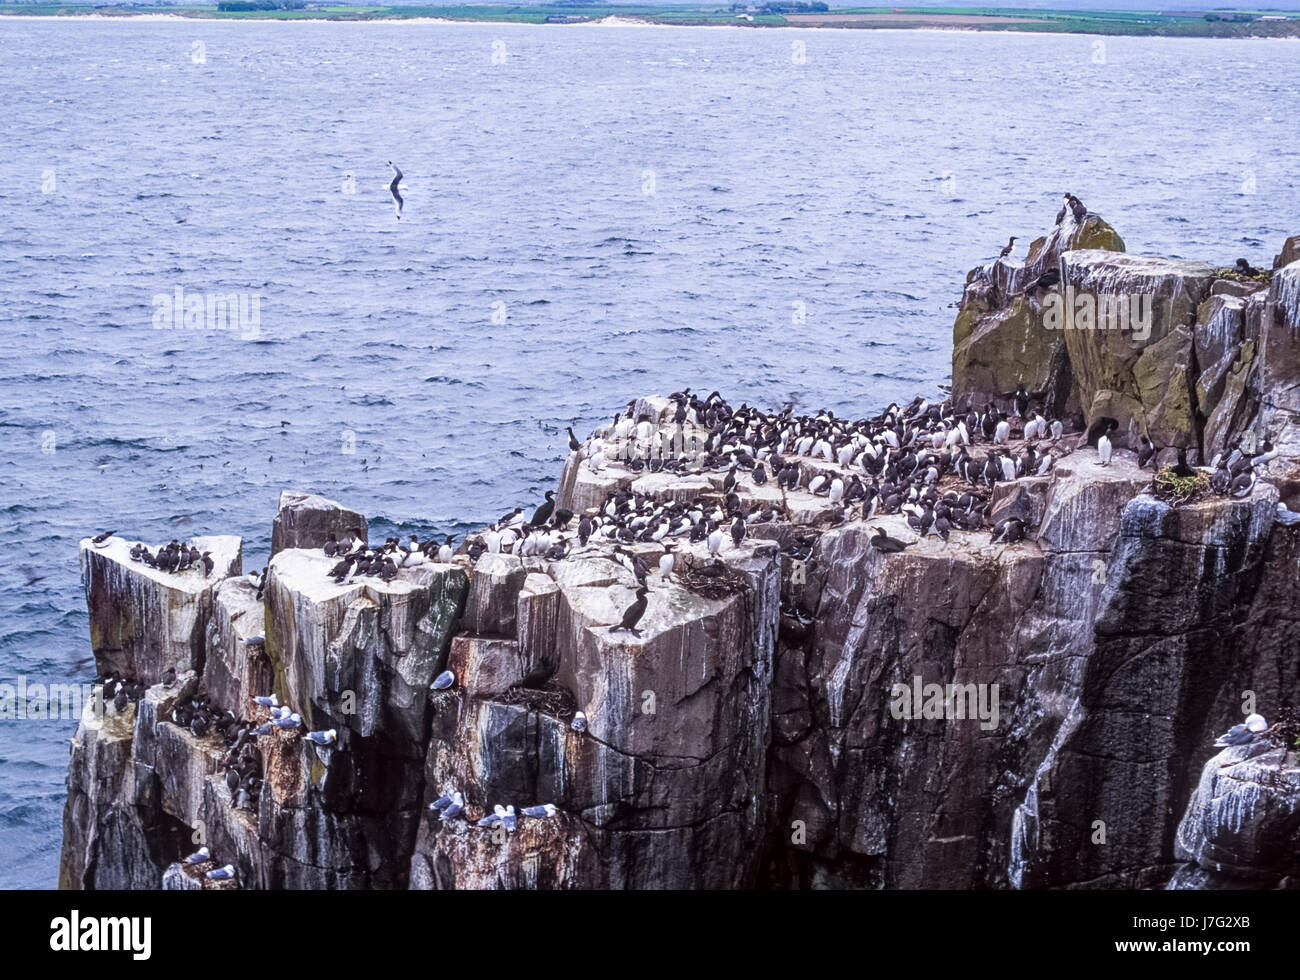 Colonie d'oiseaux de mer, d'une expression ou guillemot marmette Common guillemot (Uria aalge), Iles Farne, Royaume-Uni Banque D'Images